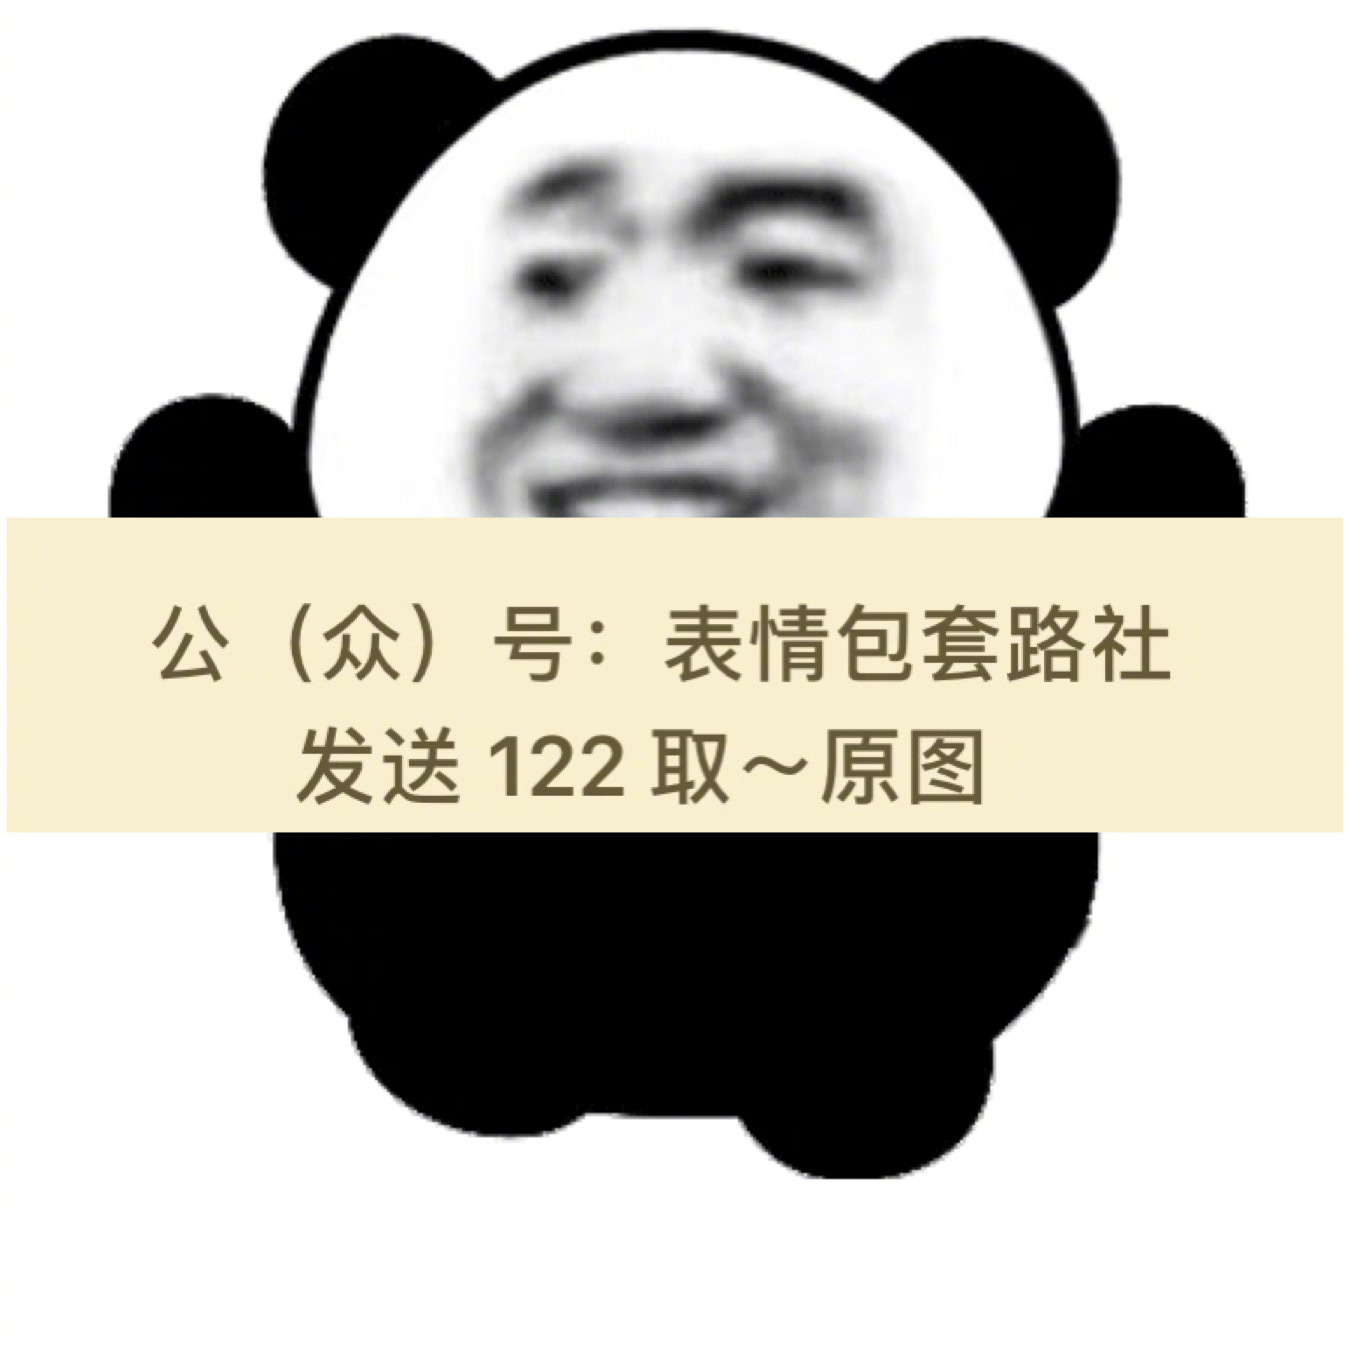 熊猫头超大霸屏表情包(含代码) 变大超大熊猫表情包